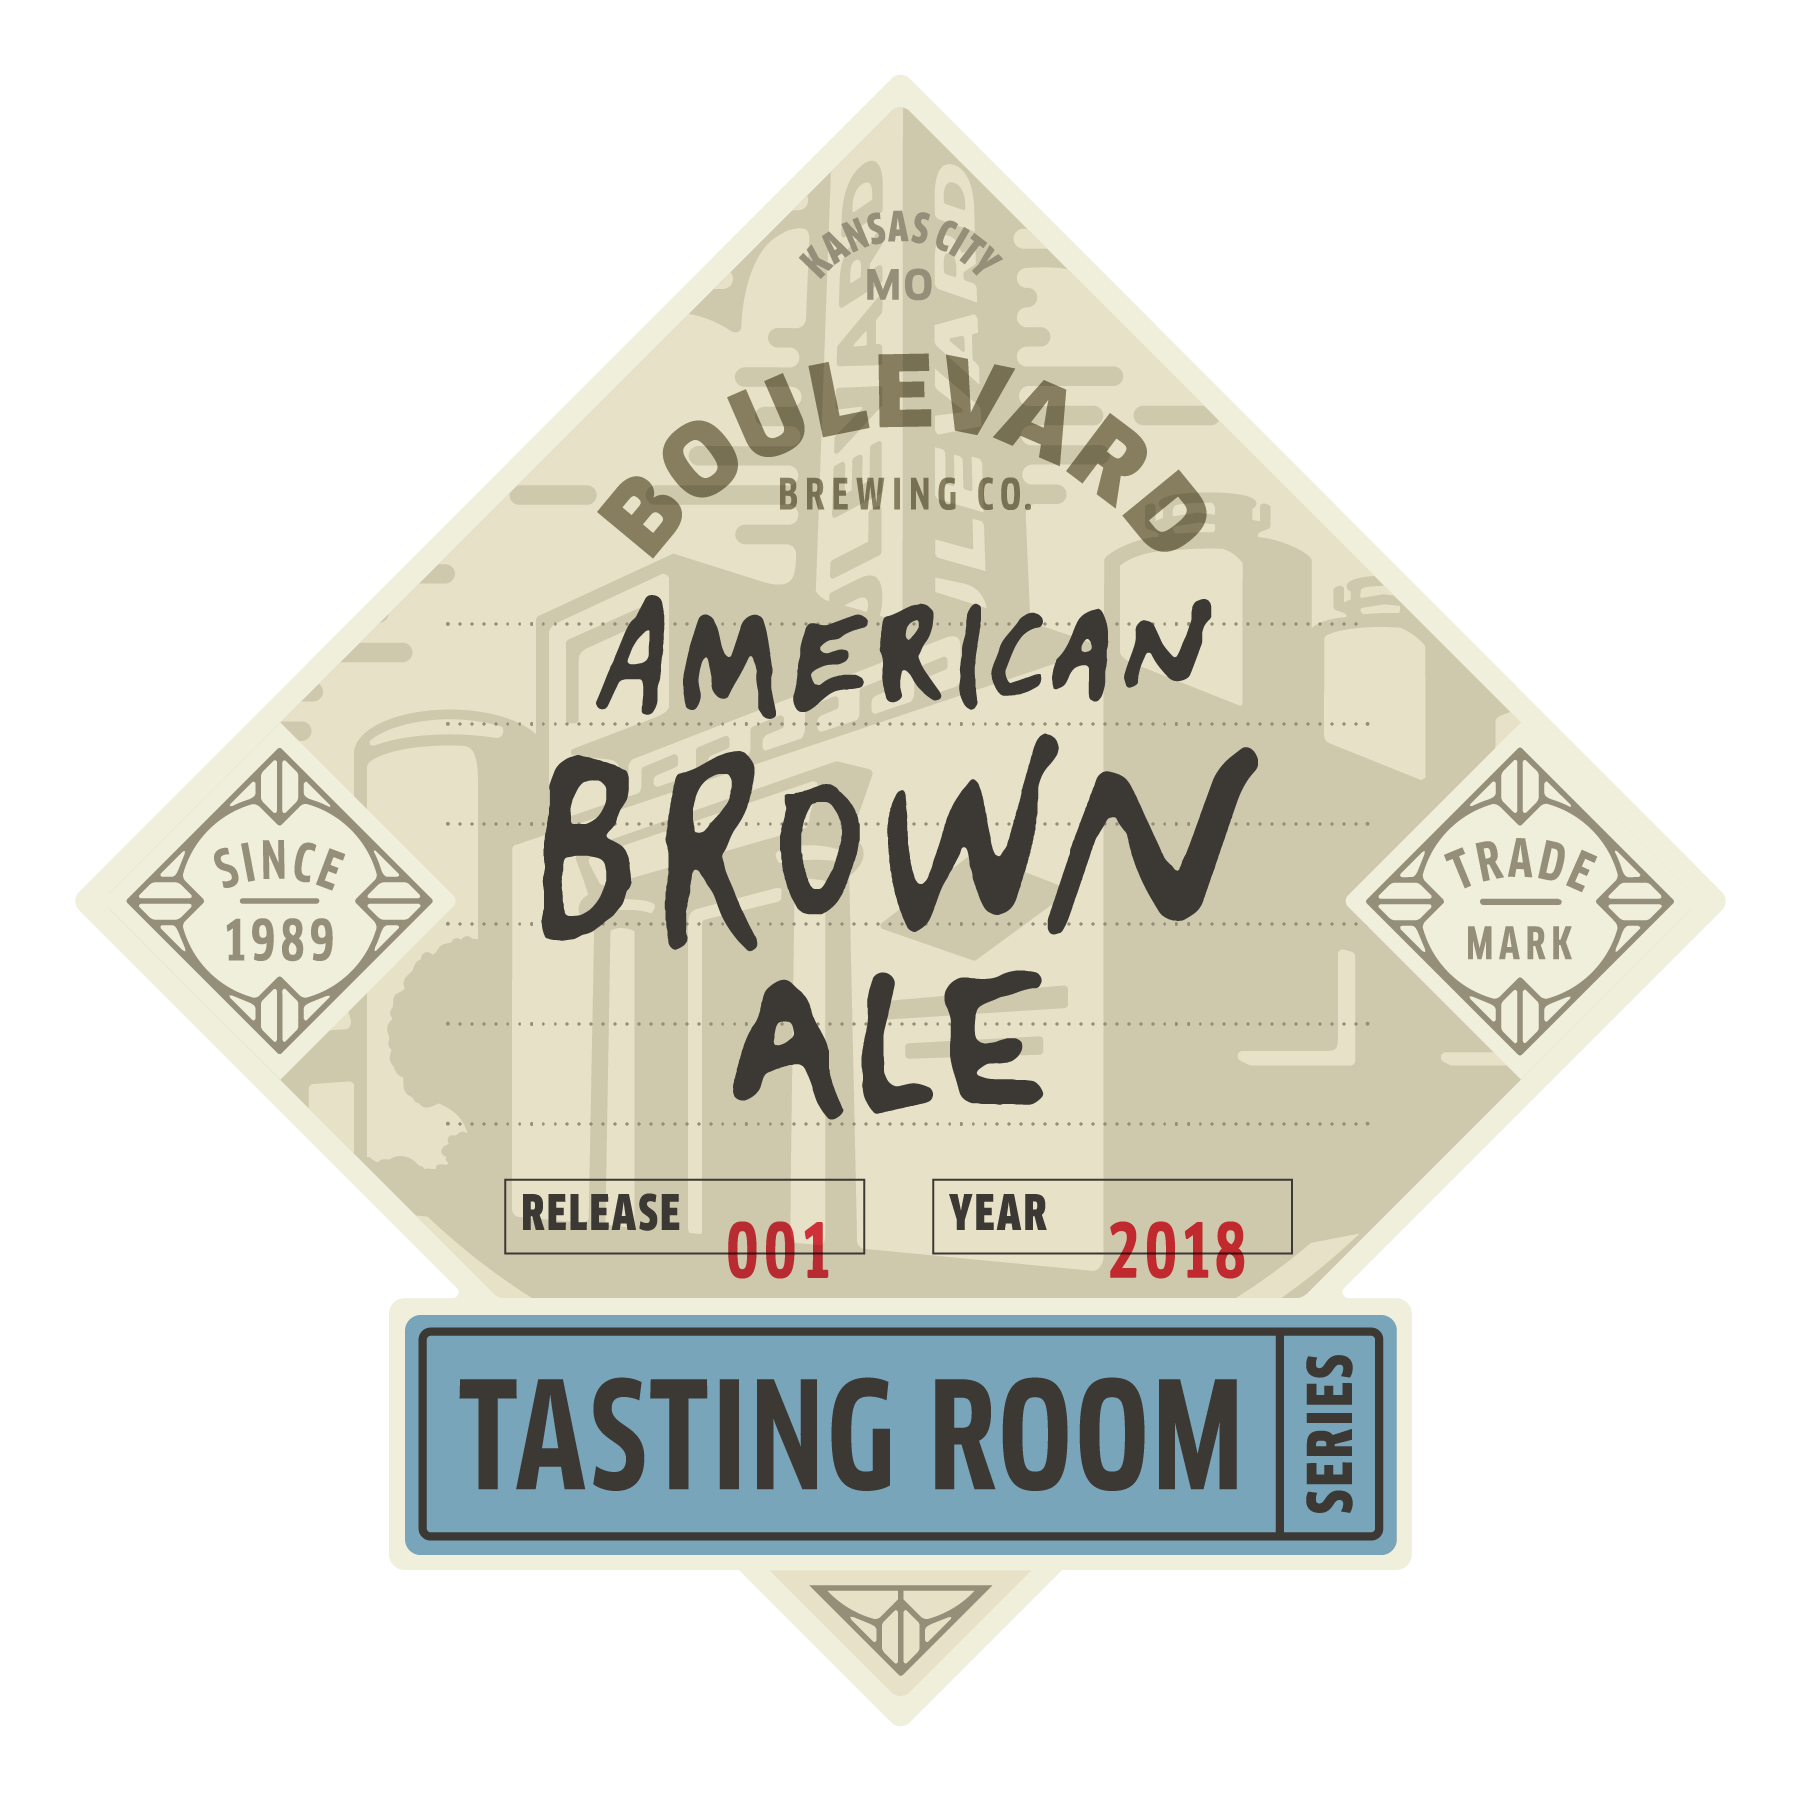 Tasting Room – American Brown Ale